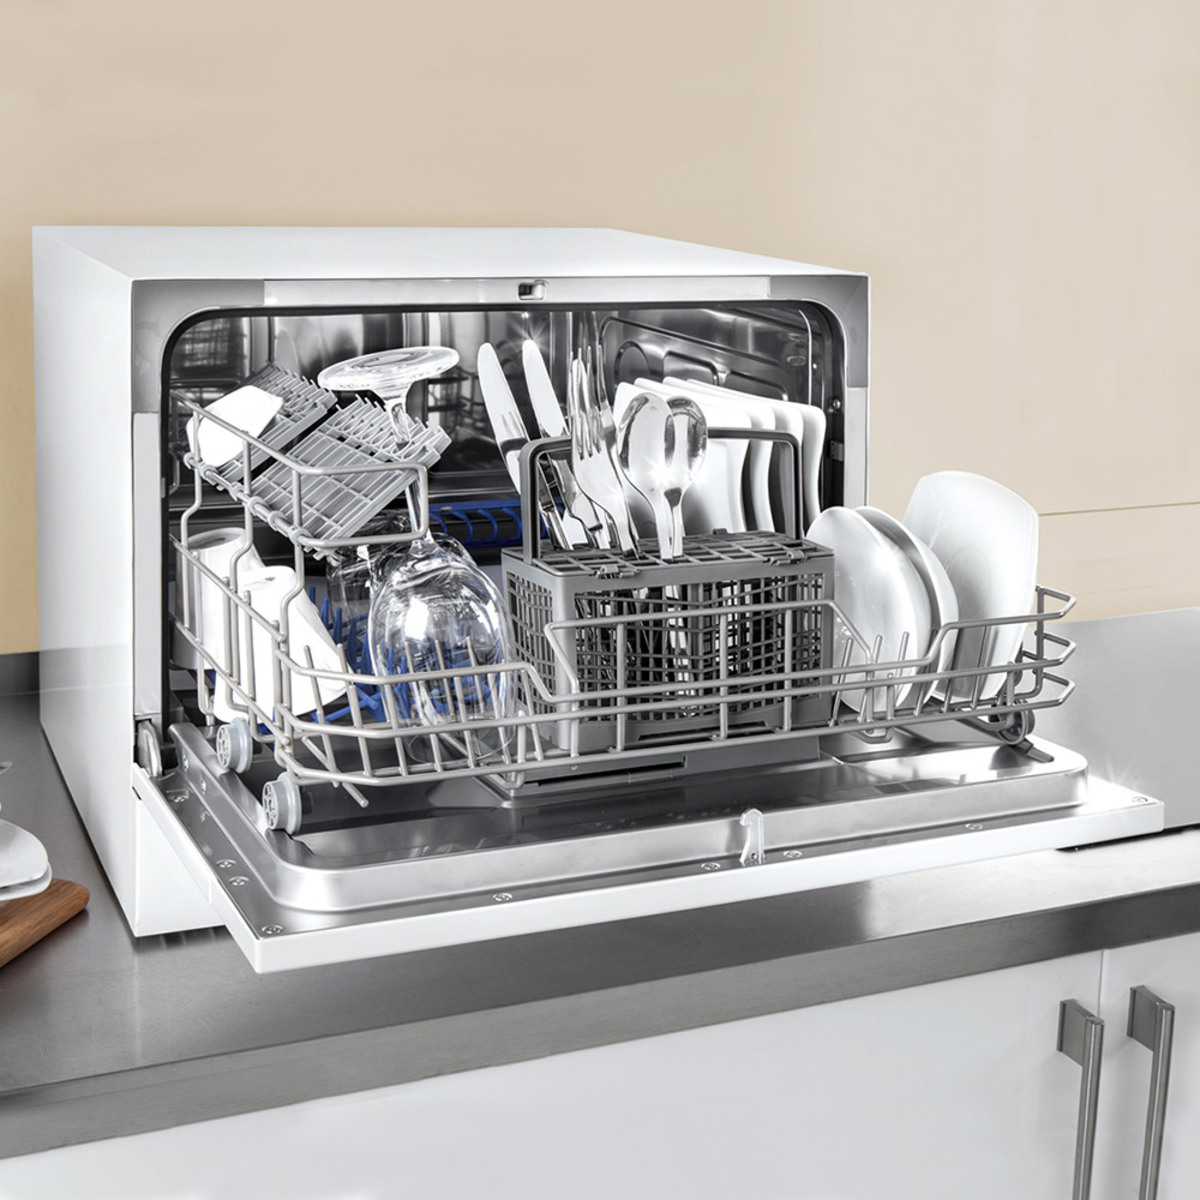 Посудомоечные машины 3 комплекта. Посудомоечная машина Marels Eco 5. Встроенная компактная ПММ 600. Встраиваемая посудомоечная машина Maunfeld MLP 06im.